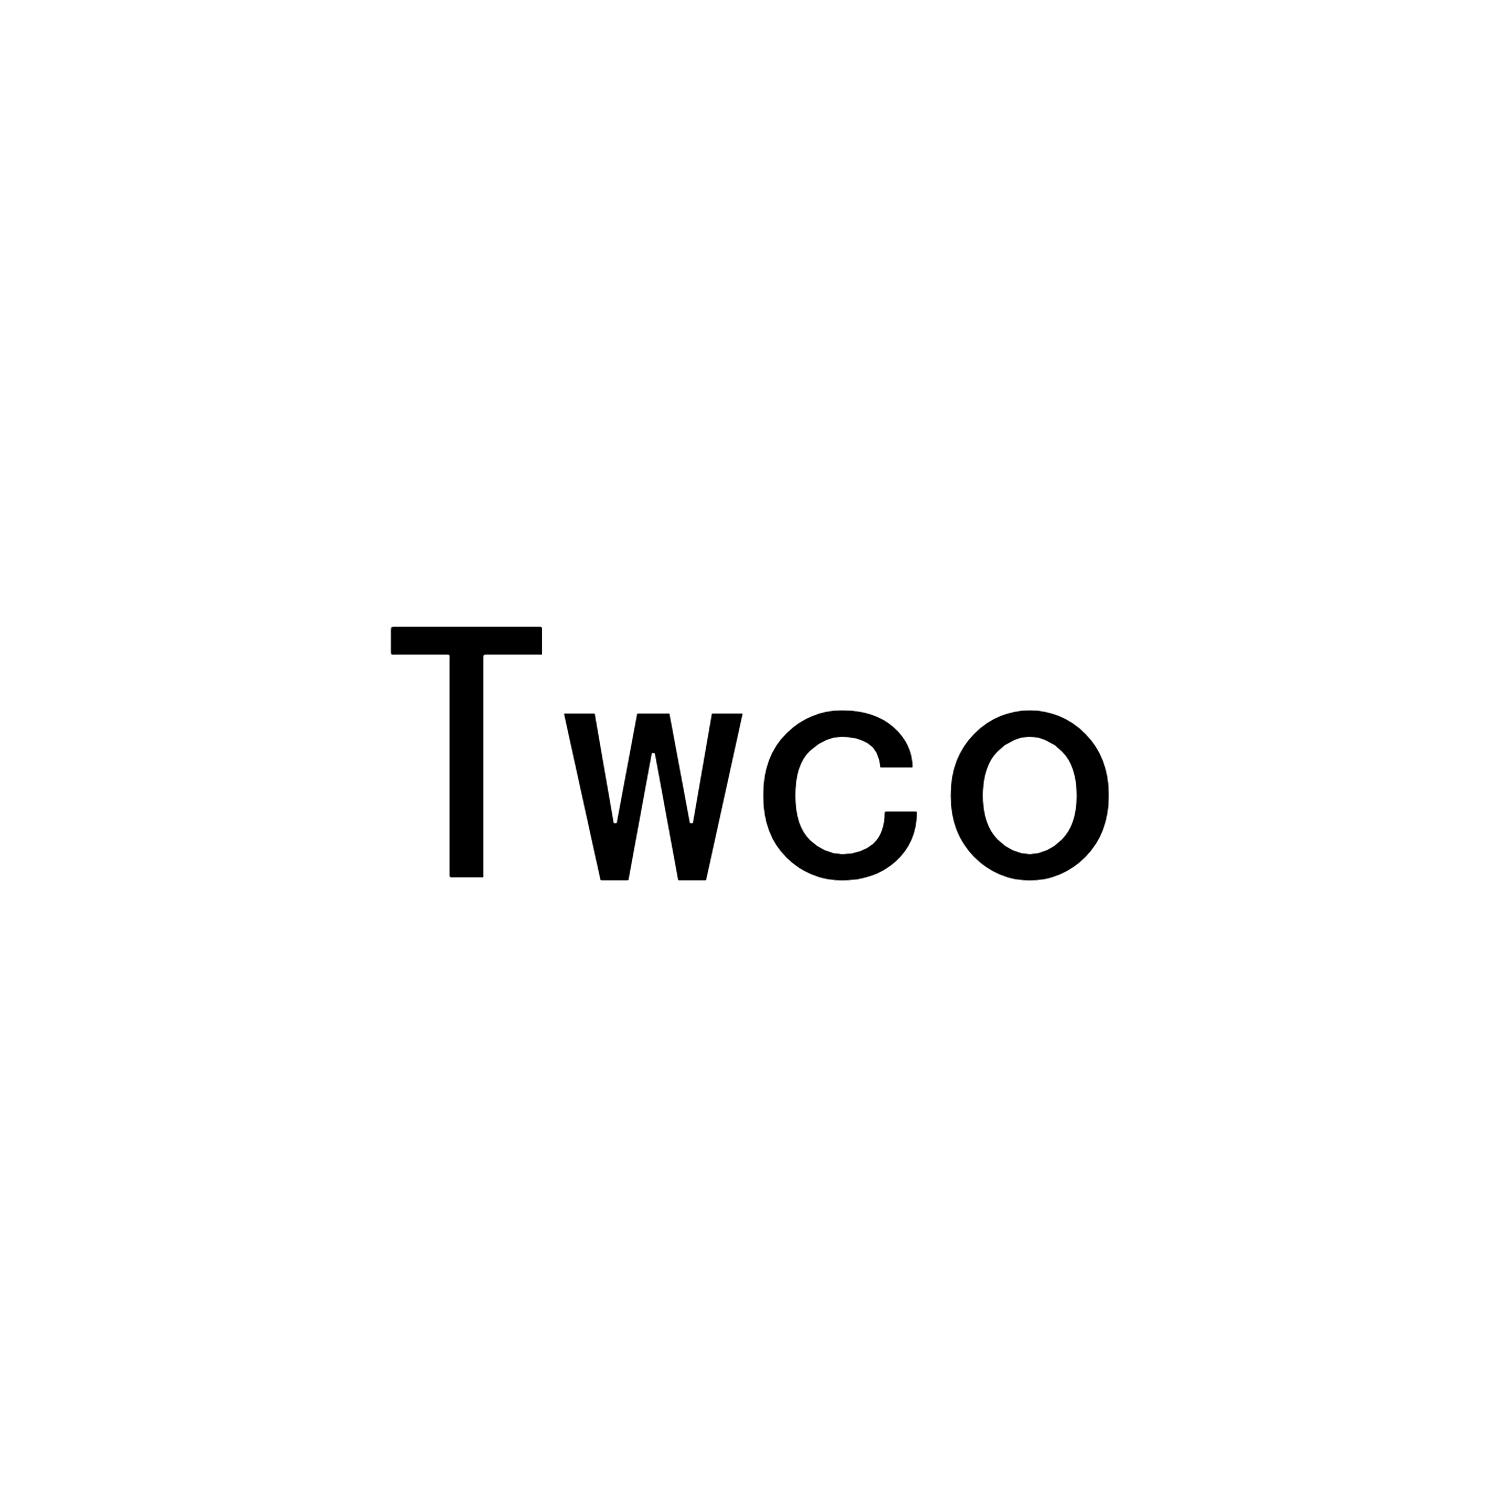 TWCO